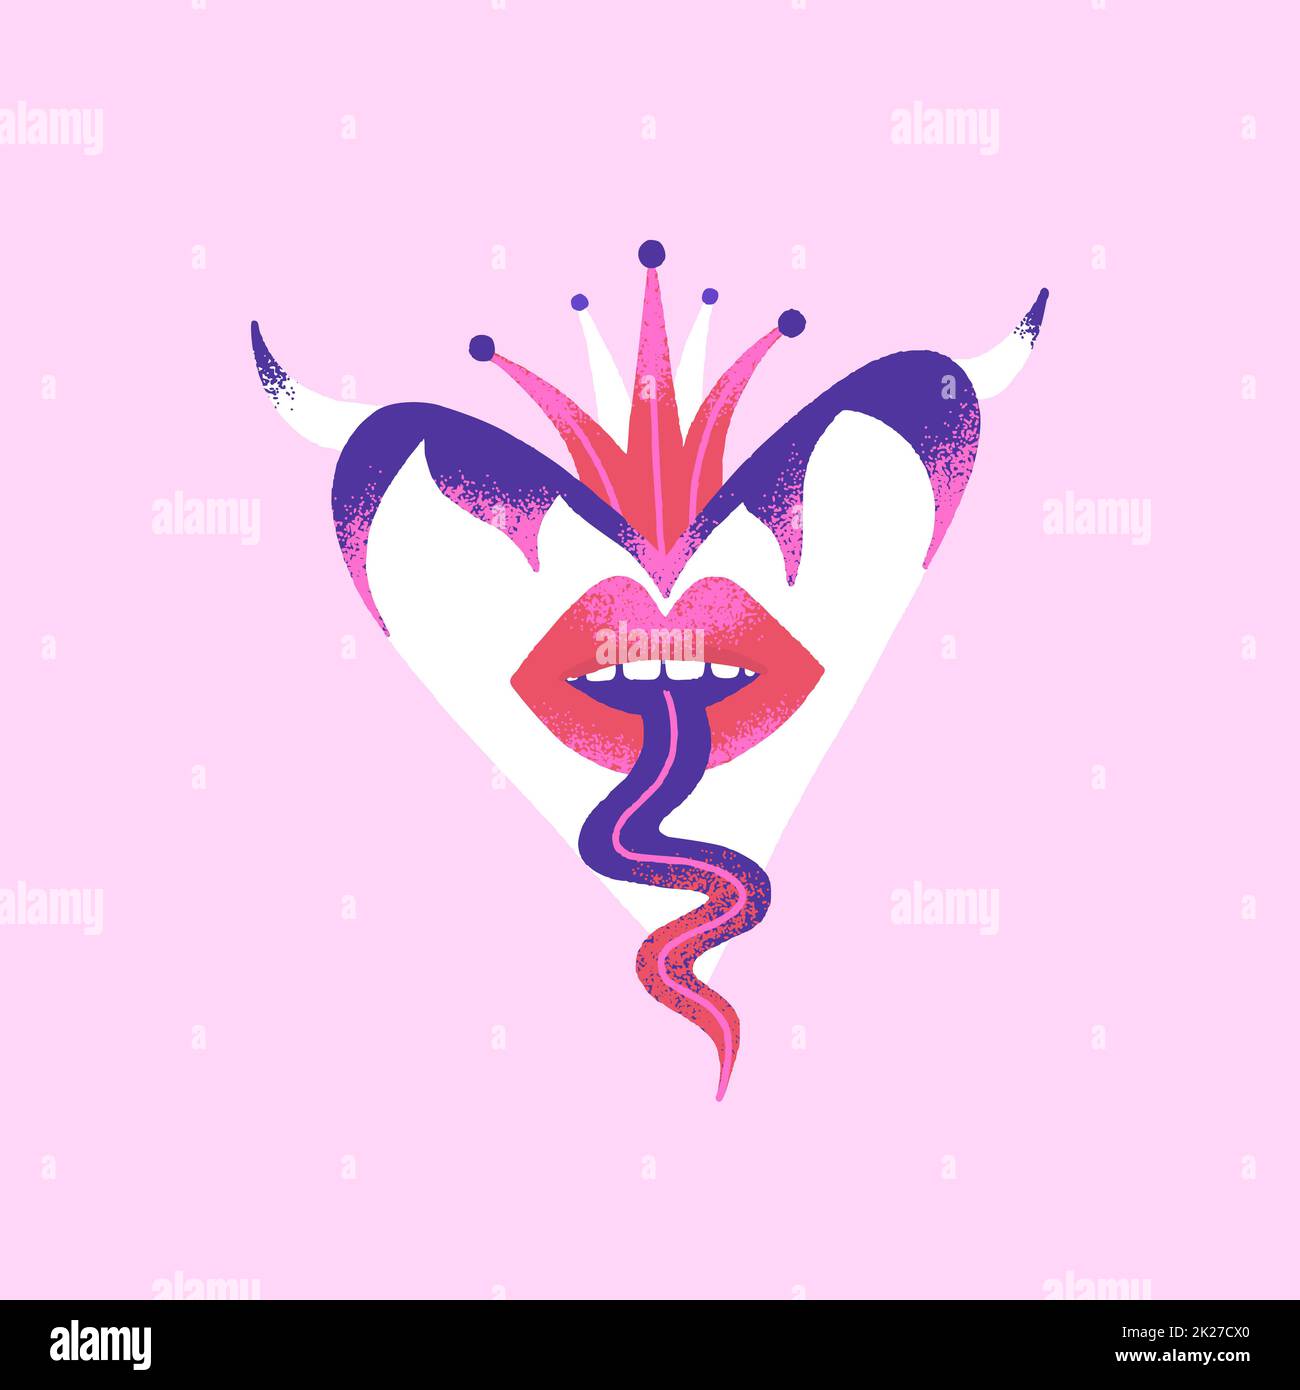 Cuore pericoloso. Carta creativa di San Valentino. Arte contemporanea Illustrazione vettoriale mistica nei colori rosa e viola Foto Stock